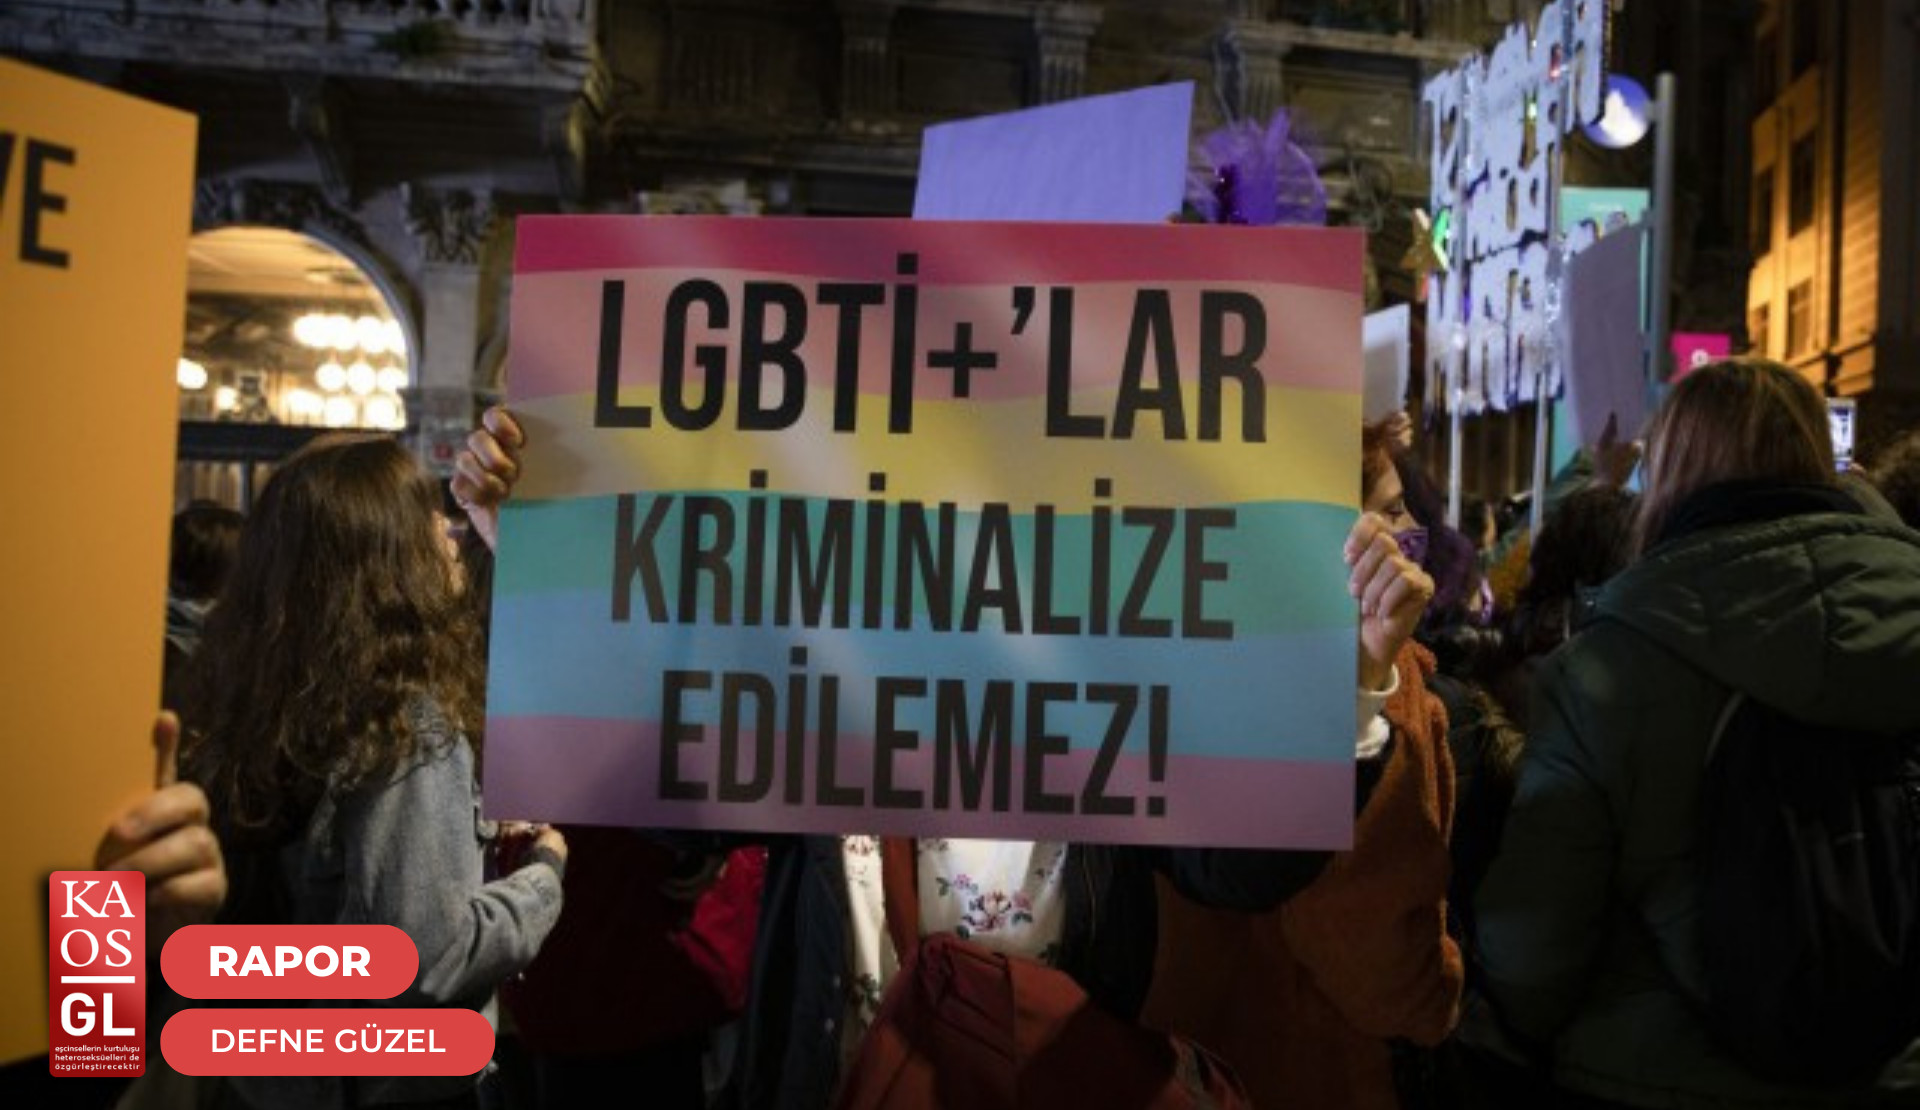 Mayıs’ta LGBTİ+’lara hak ihlalleri: Siyasilerin günlüğünde trans kadınlara pompalı tüfekle saldıranlar yok Eurovision birincisi var | Kaos GL - LGBTİ+ Haber Portalı